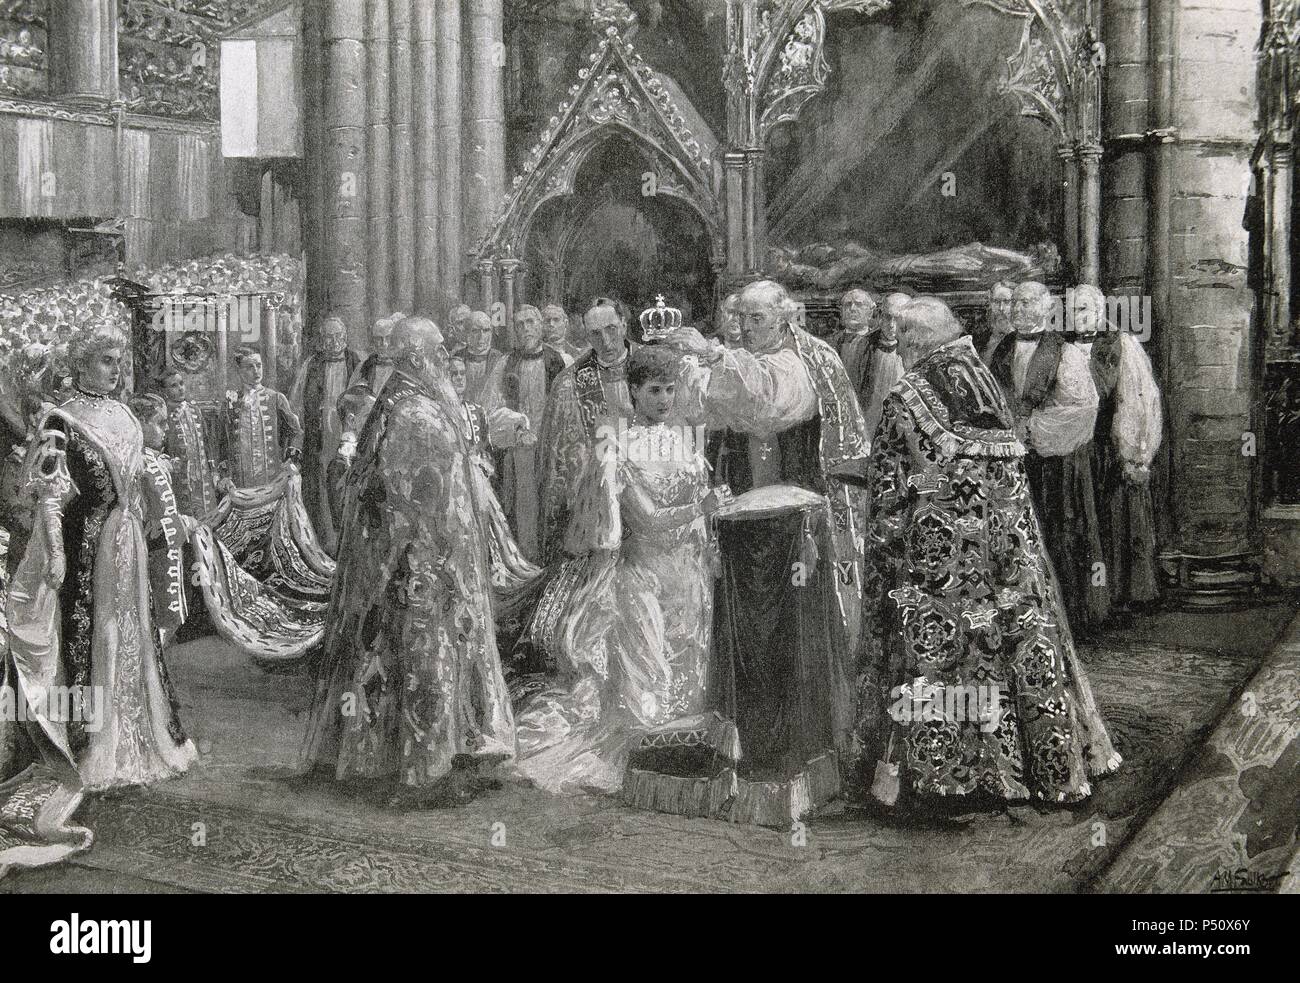 Alexandra von Dänemark (1844-1925). Königin des Vereinigten Königreichs, Frau von Edward VII. Krönung der Königin Alexandra (August, 1902). Gravur in "L'Illustration". Stockfoto